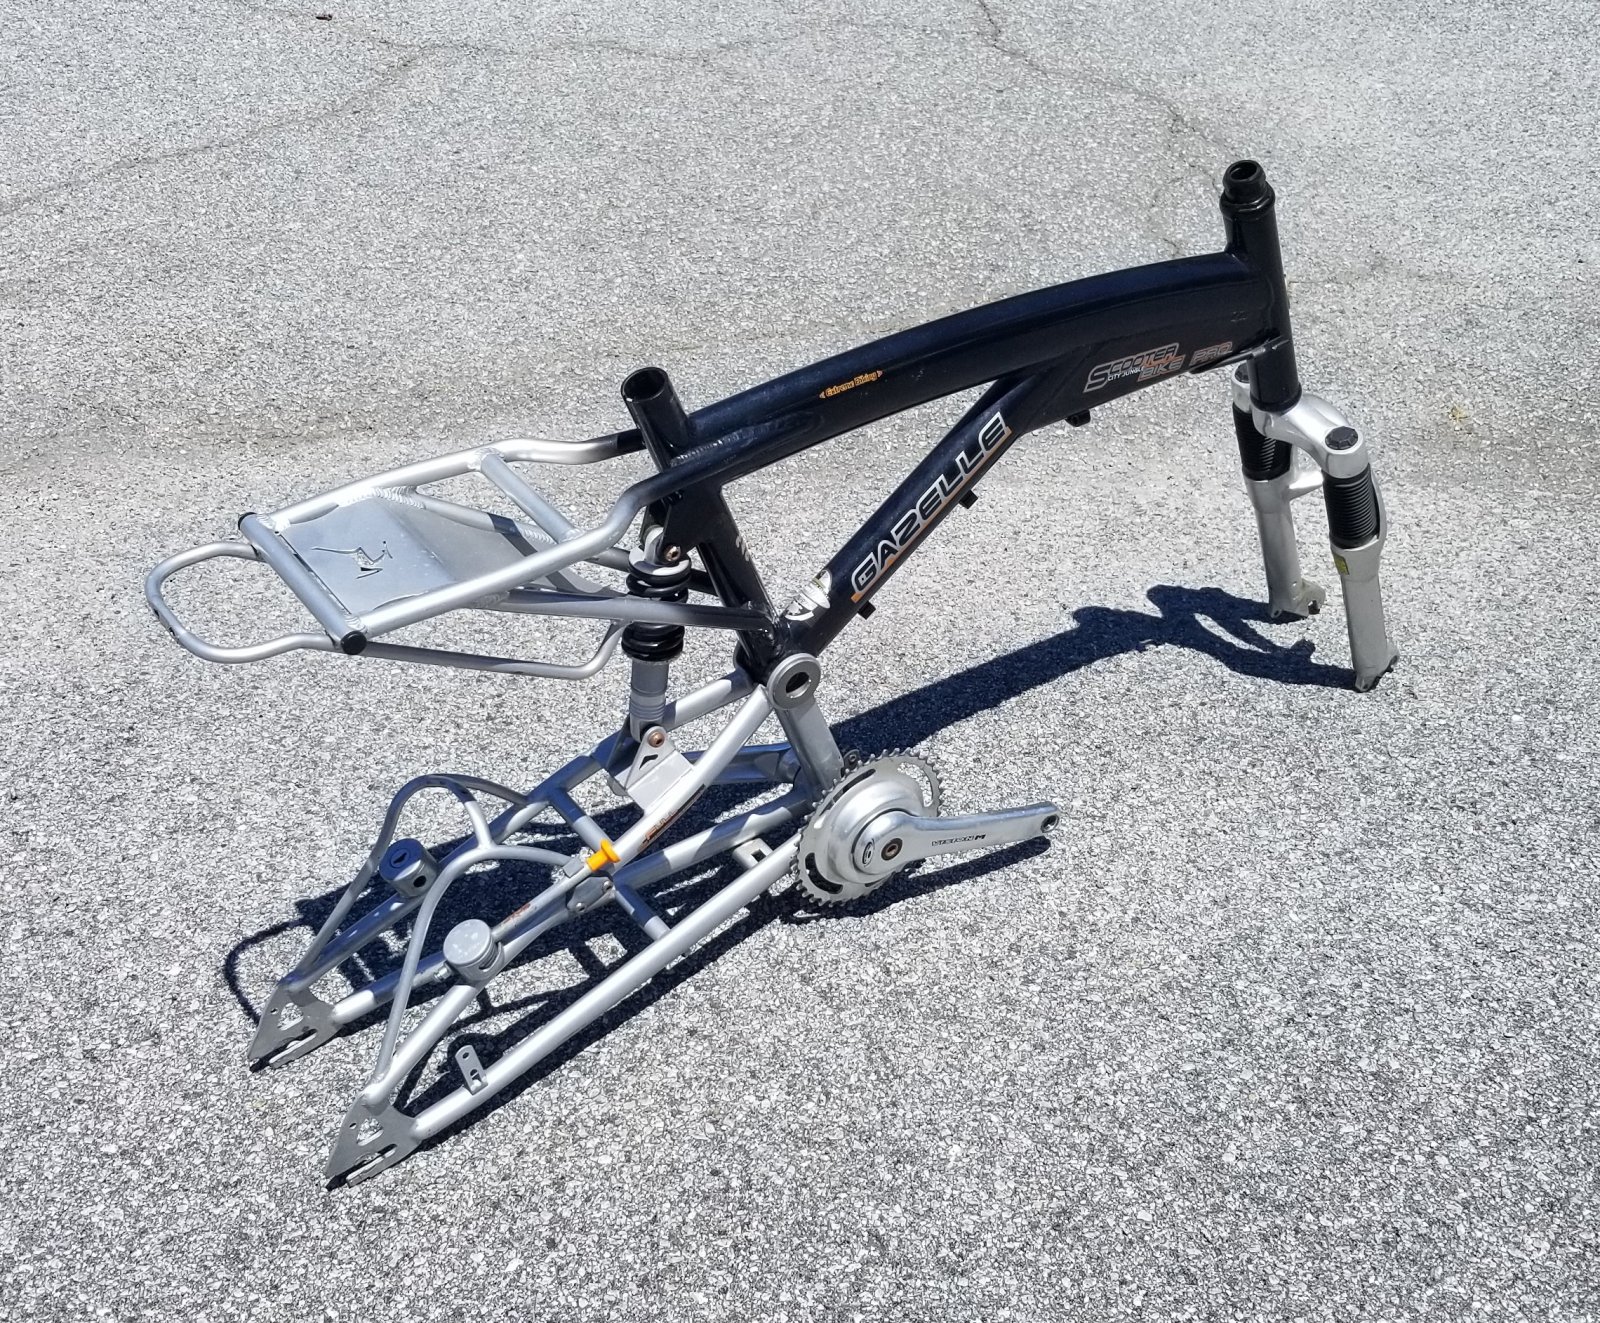 Unusual Gazelle Full Suspension Frame Fork for 20" Wheels | Rat Rod Bikes Forum